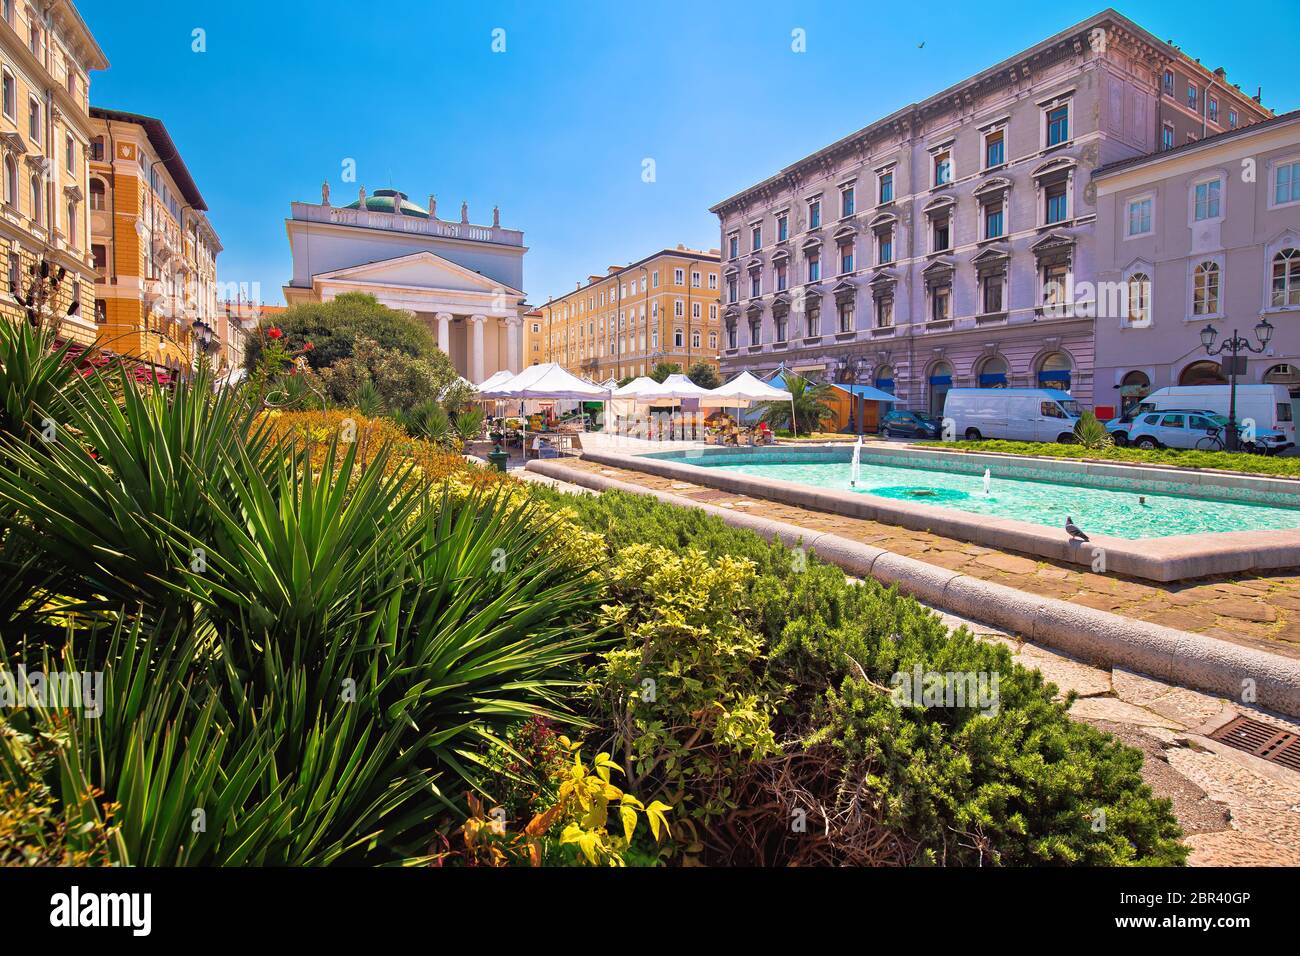 Trieste Piazza Sant Antonio Nuovo fountain and church colorful view, Friuli Venezia Giulia region of Italy Stock Photo